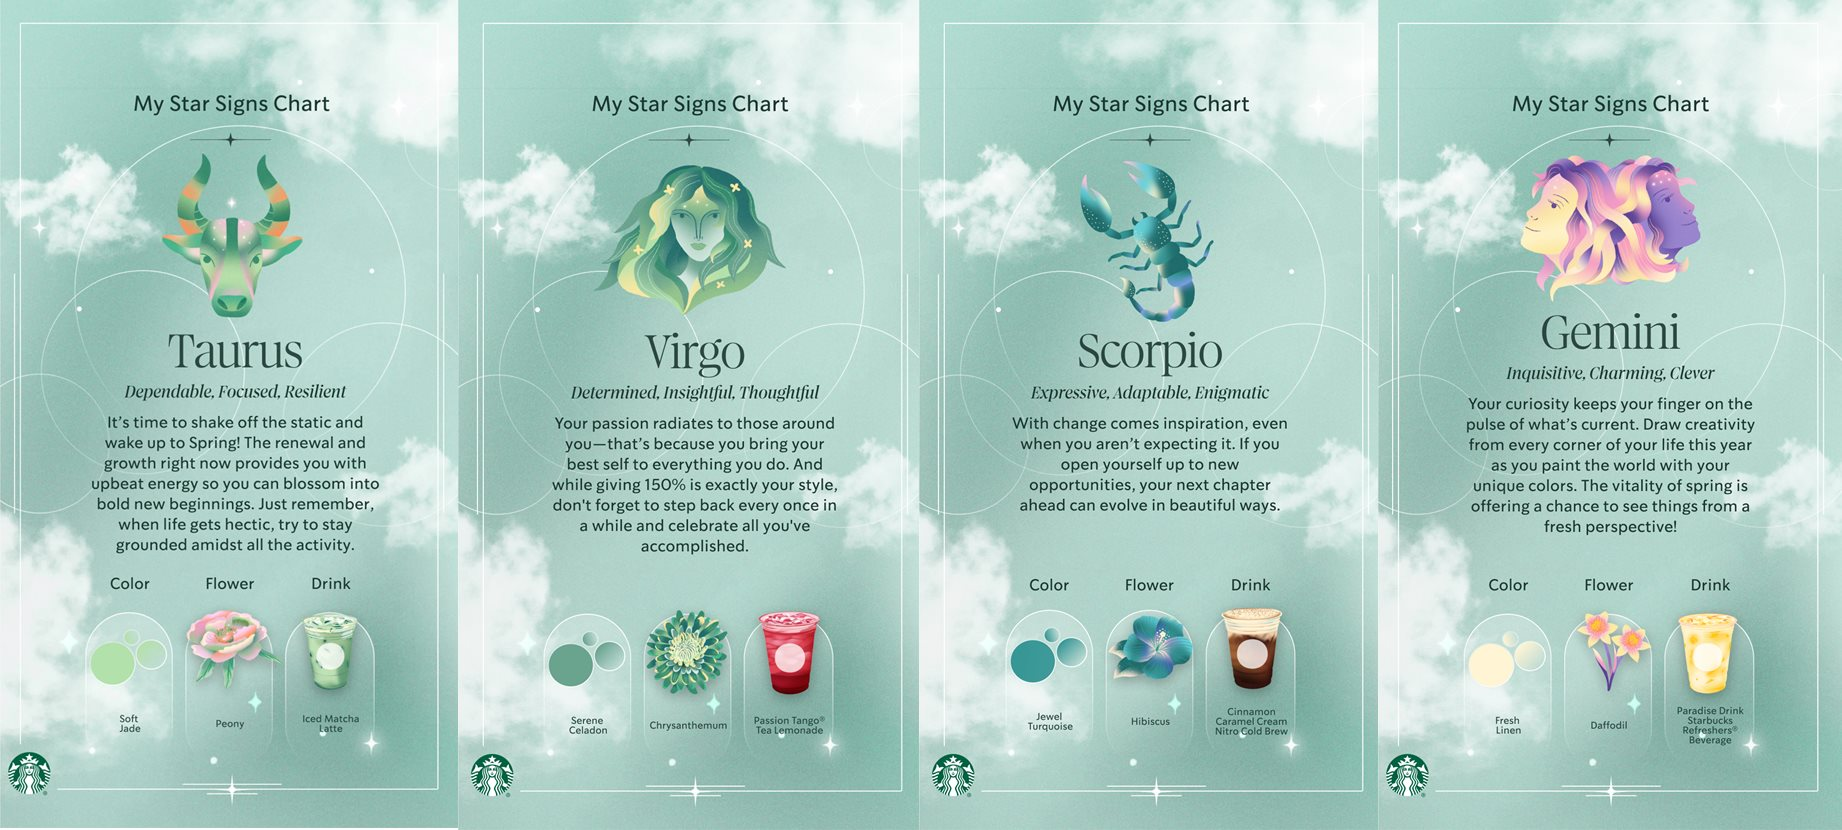 Uống cà phê &quot;hệ tâm linh&quot;: Starbucks bắt tay ứng dụng bói bài Tarot, cho phép người dùng gọi thức uống và xem tử vi theo cung hoàng đạo - Ảnh 2.